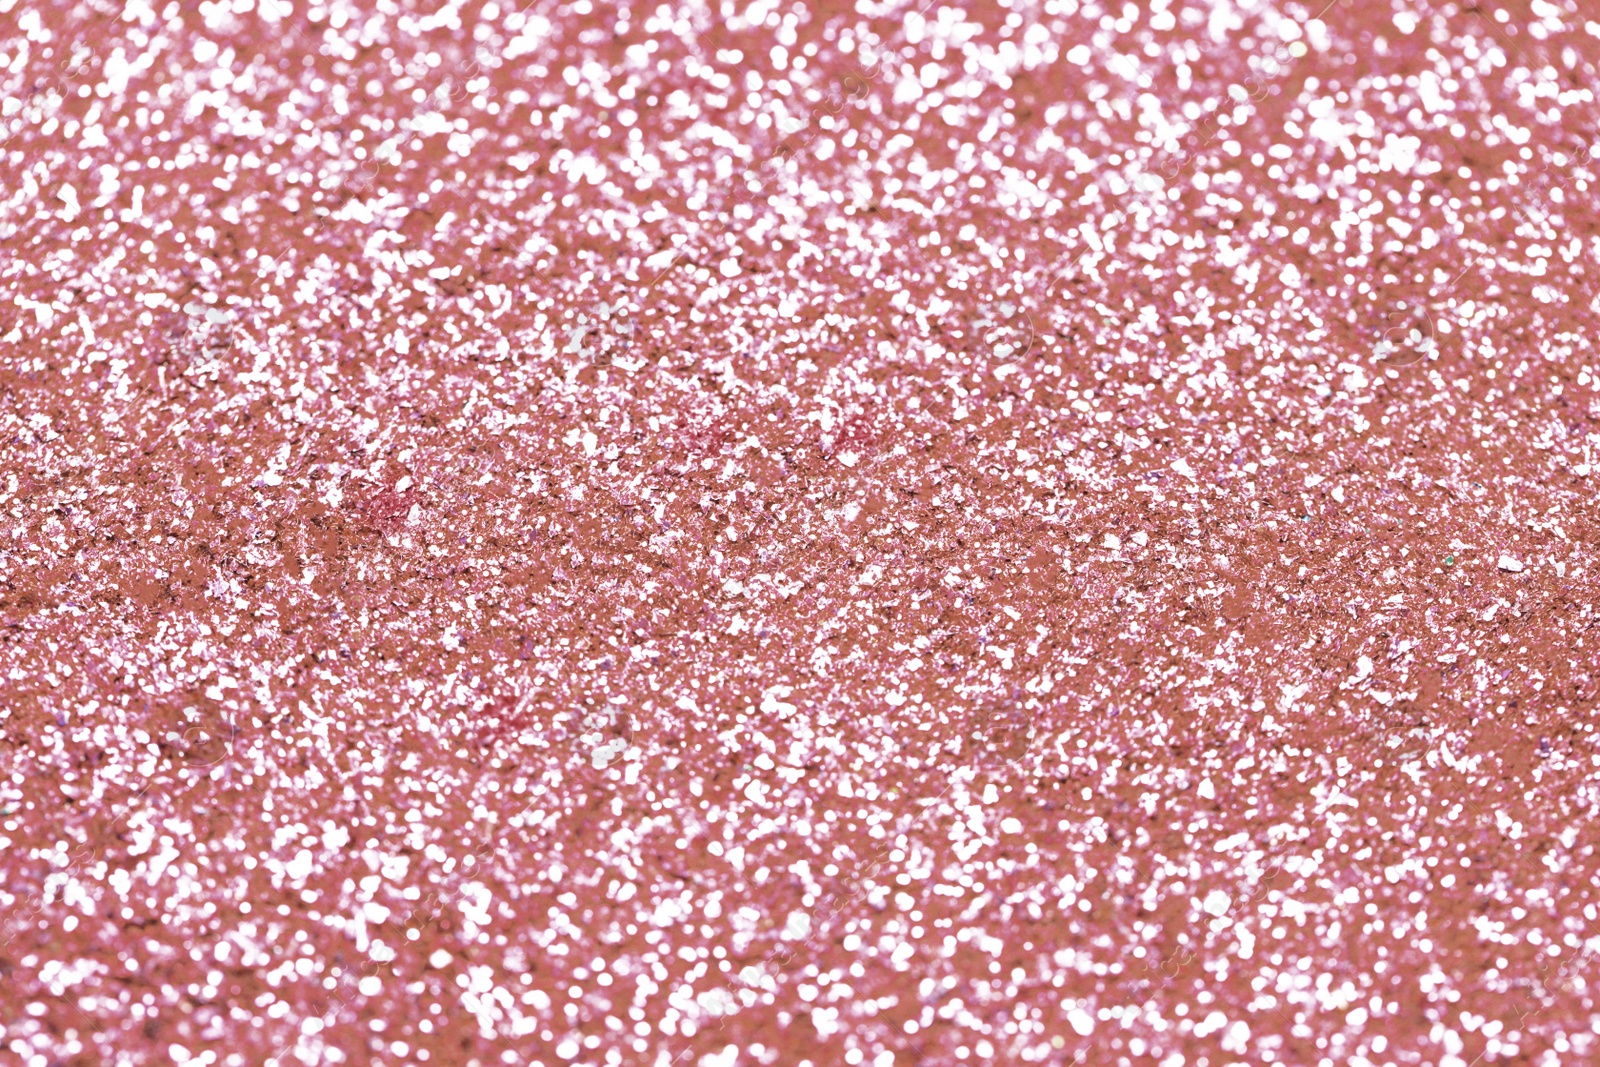 Photo of Beautiful pink shiny glitter as background, closeup